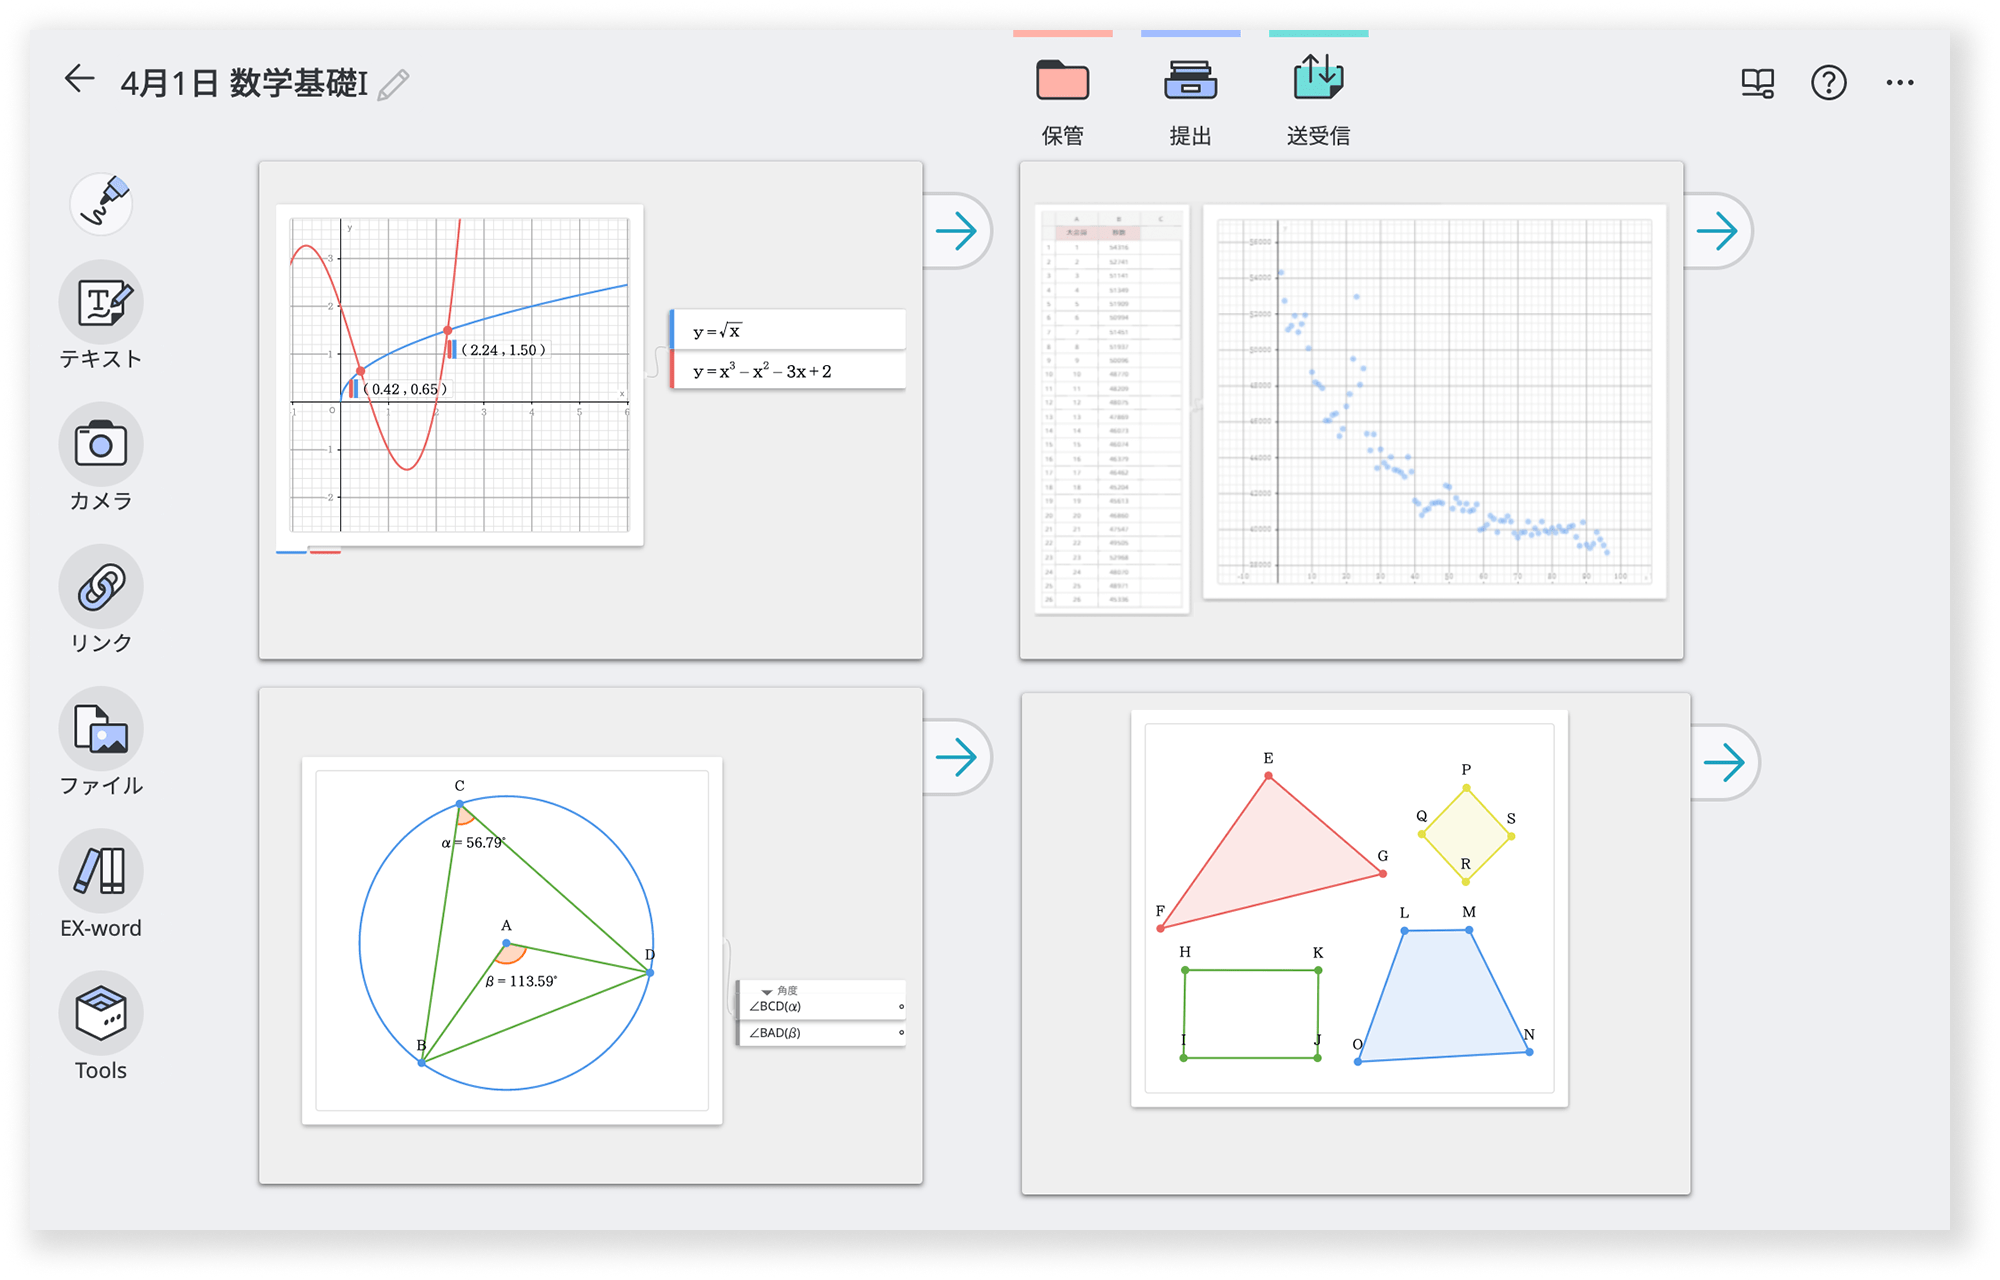 オンライン学習アプリClassPad.net 　数学ツール「ClassPad Math」